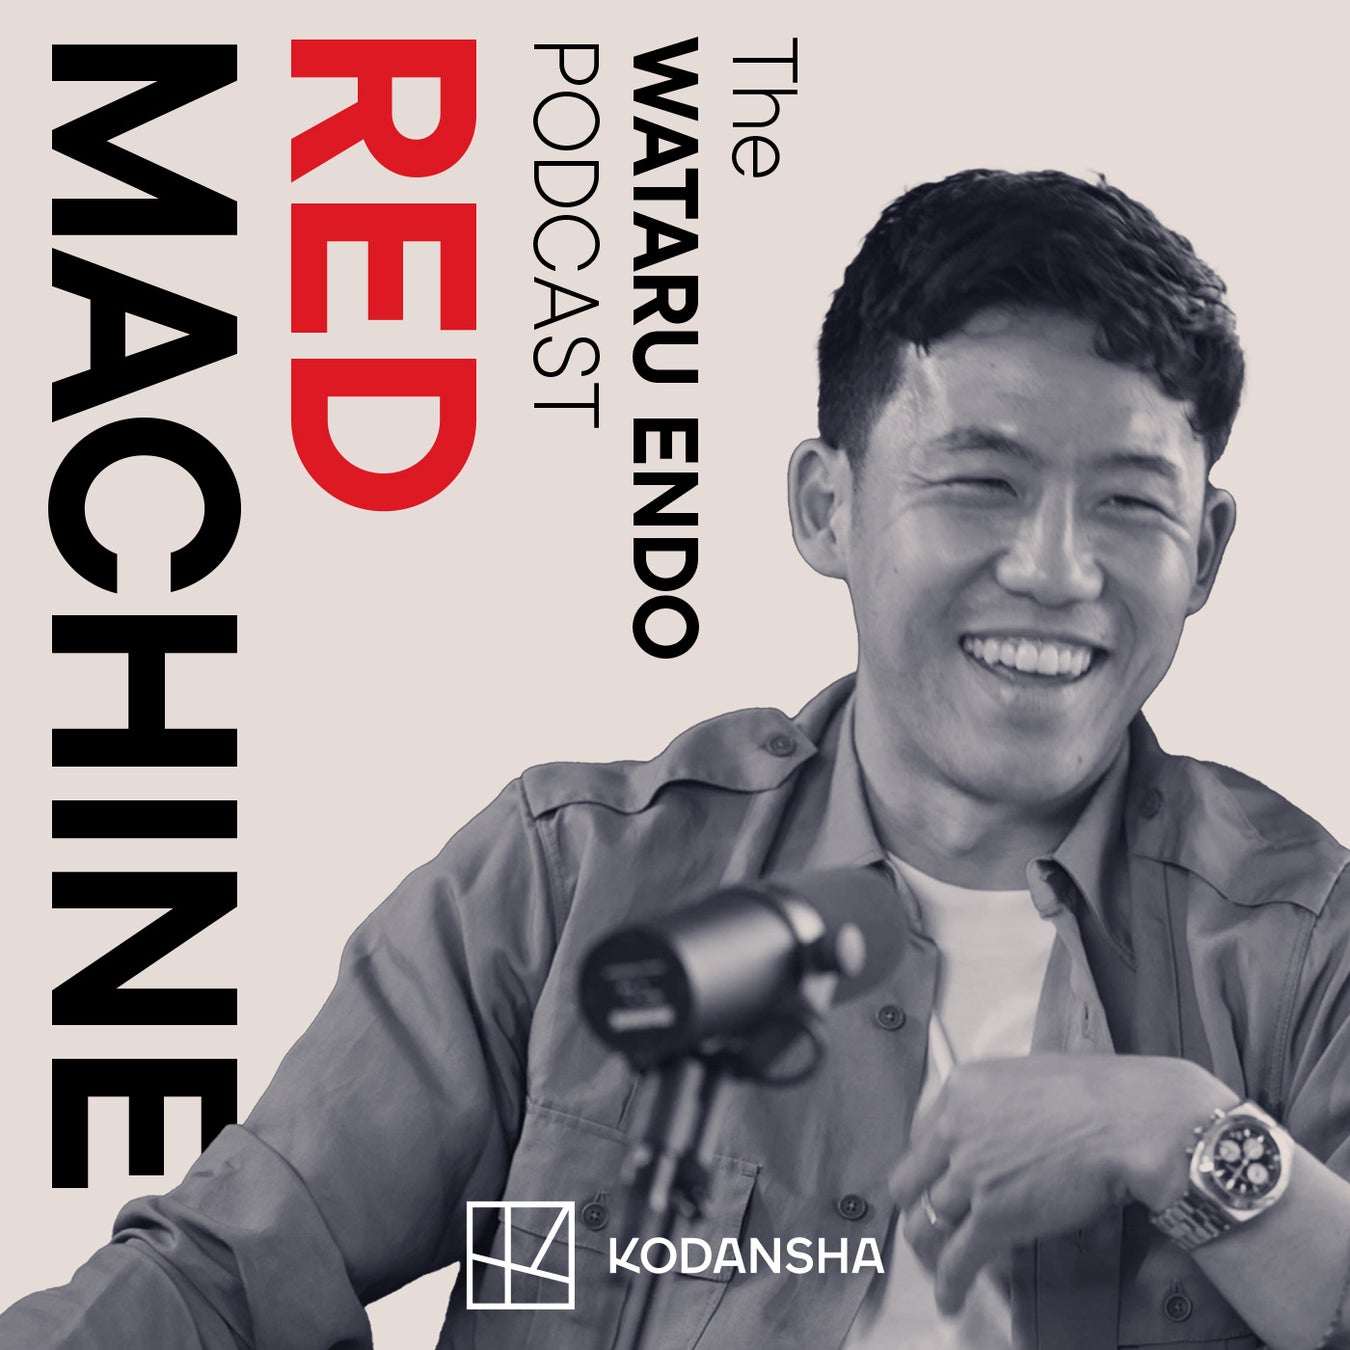 リバプールFC遠藤航選手のポッドキャスト「RED MACHINE The WATARU ENDO PODCAST」講談社制作、ポッドキャストホスティングサービスSonicbowlで世界へ向けて英語配信